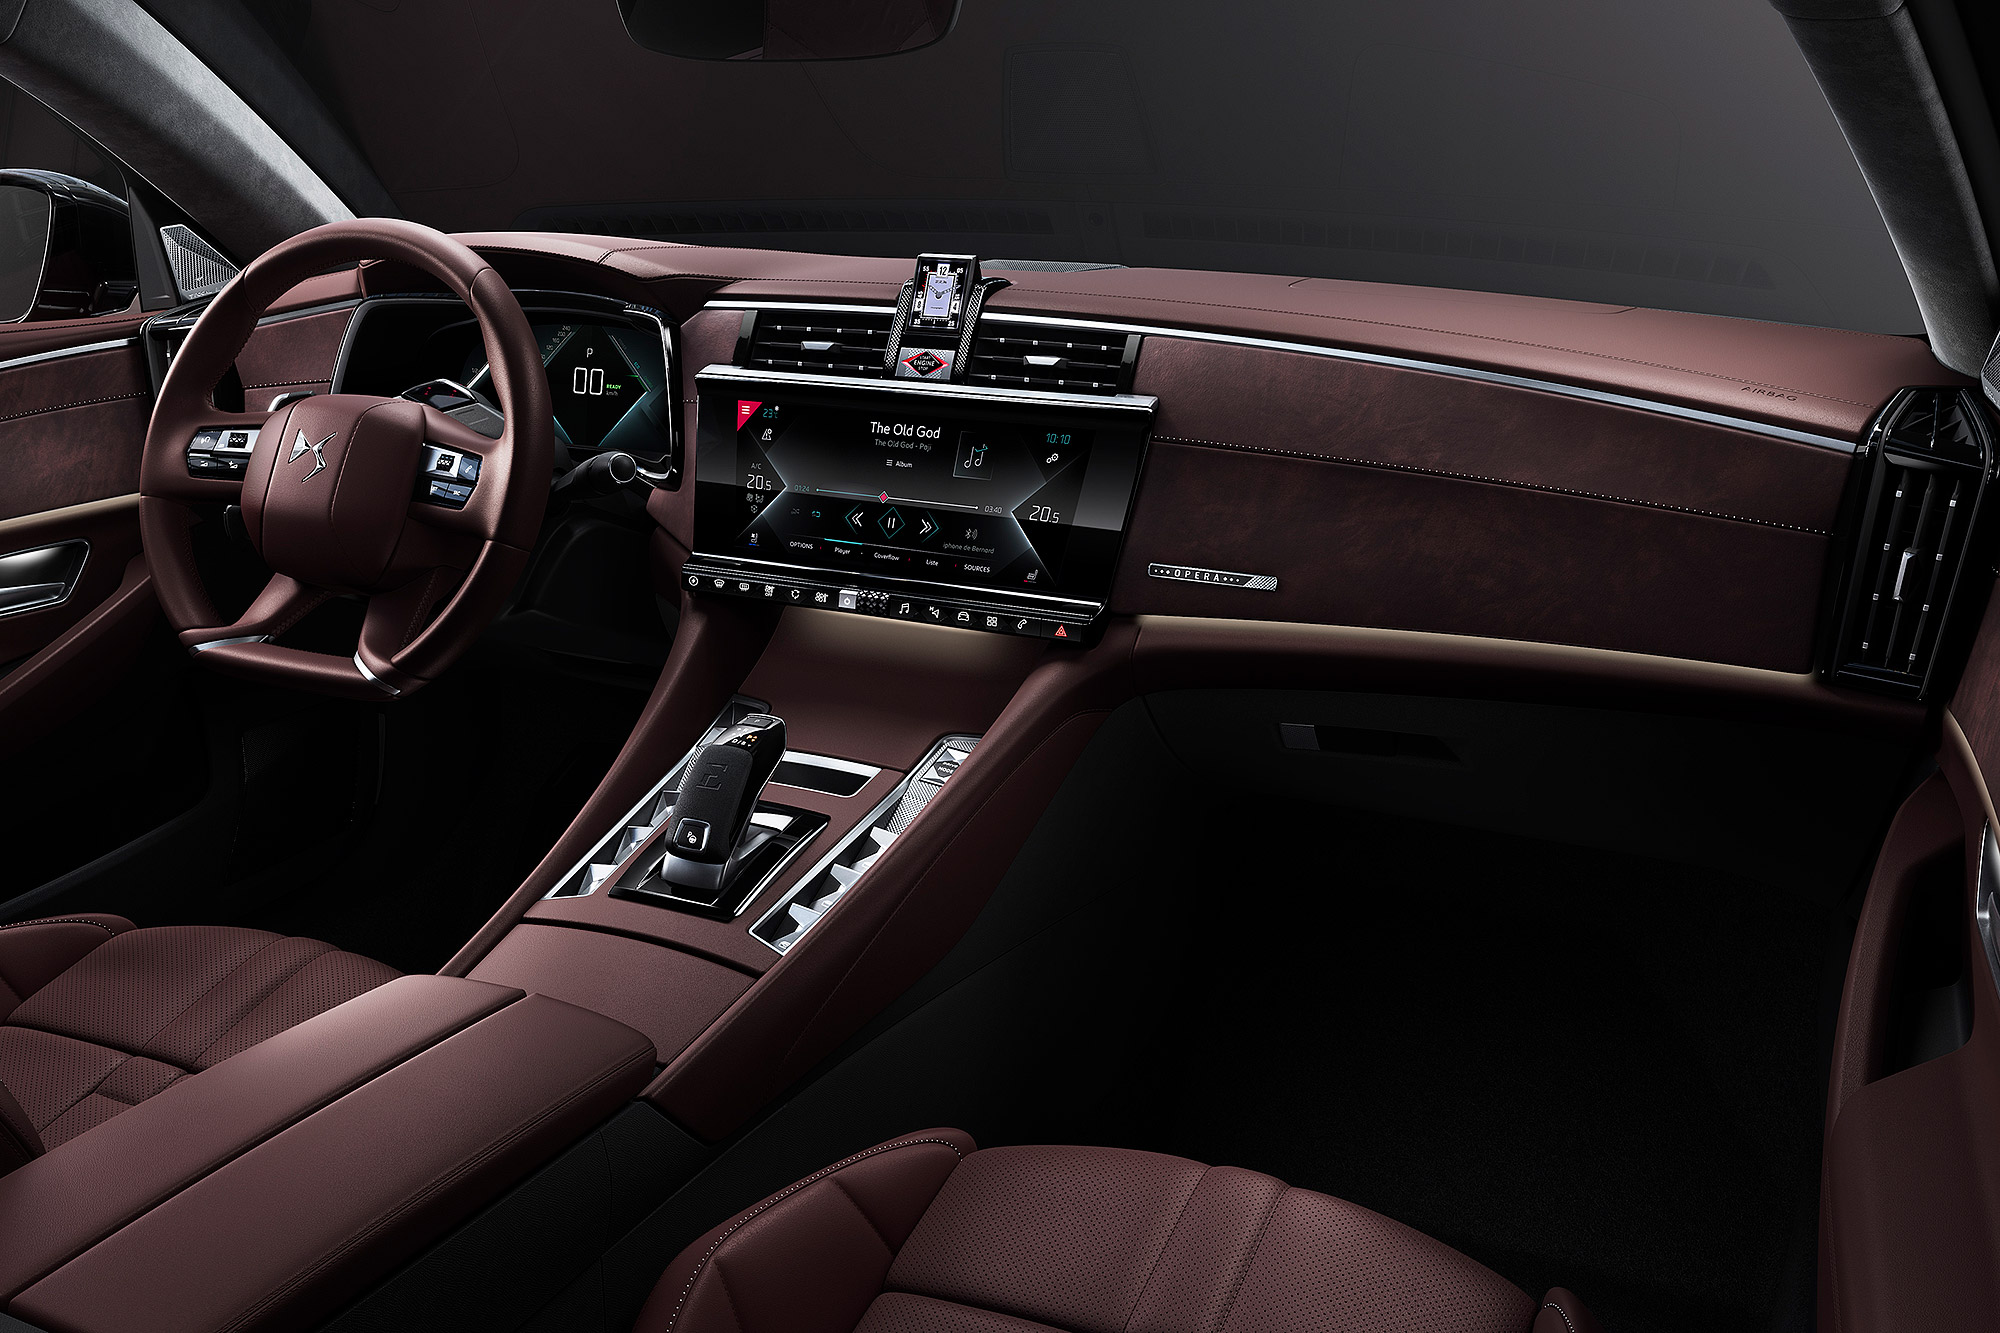 座艙內部導入 DS Automobiles 品牌的設計元素。